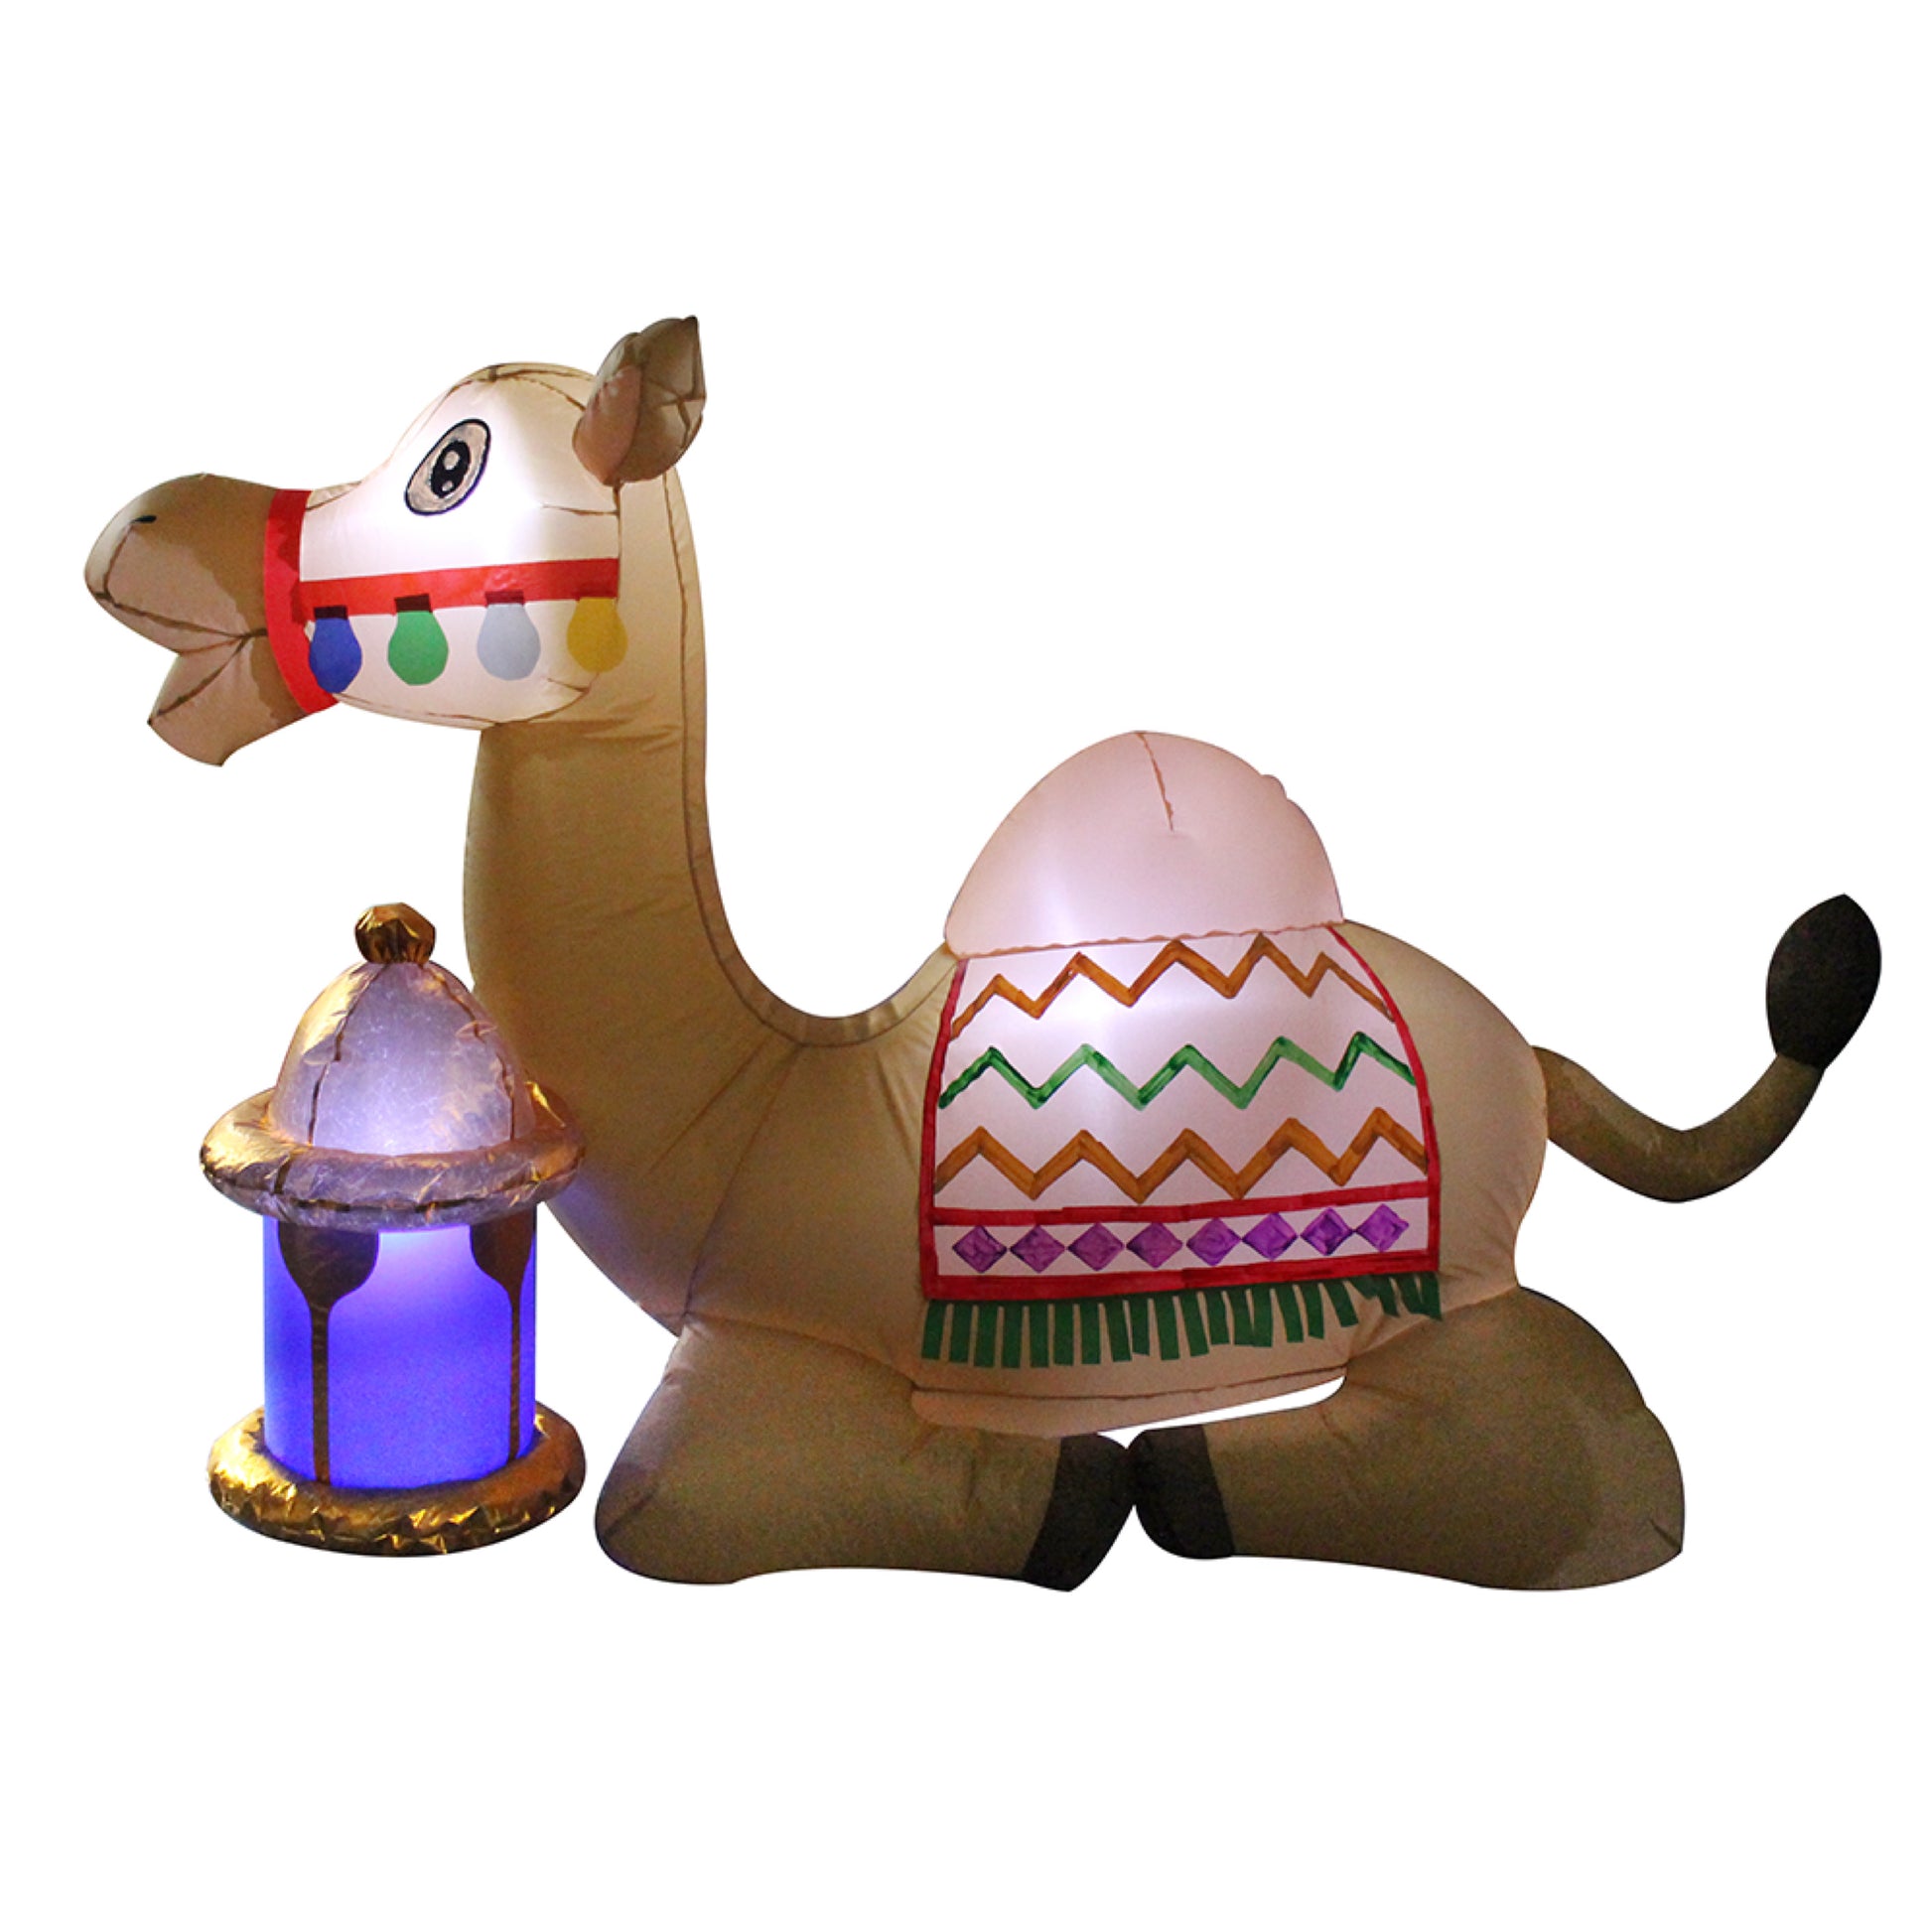 Inflatable Camel 3 ft Balloon for Ramadan بالون لزينة رمضان على هيئة جمل بطول يصل ل3 أقدام